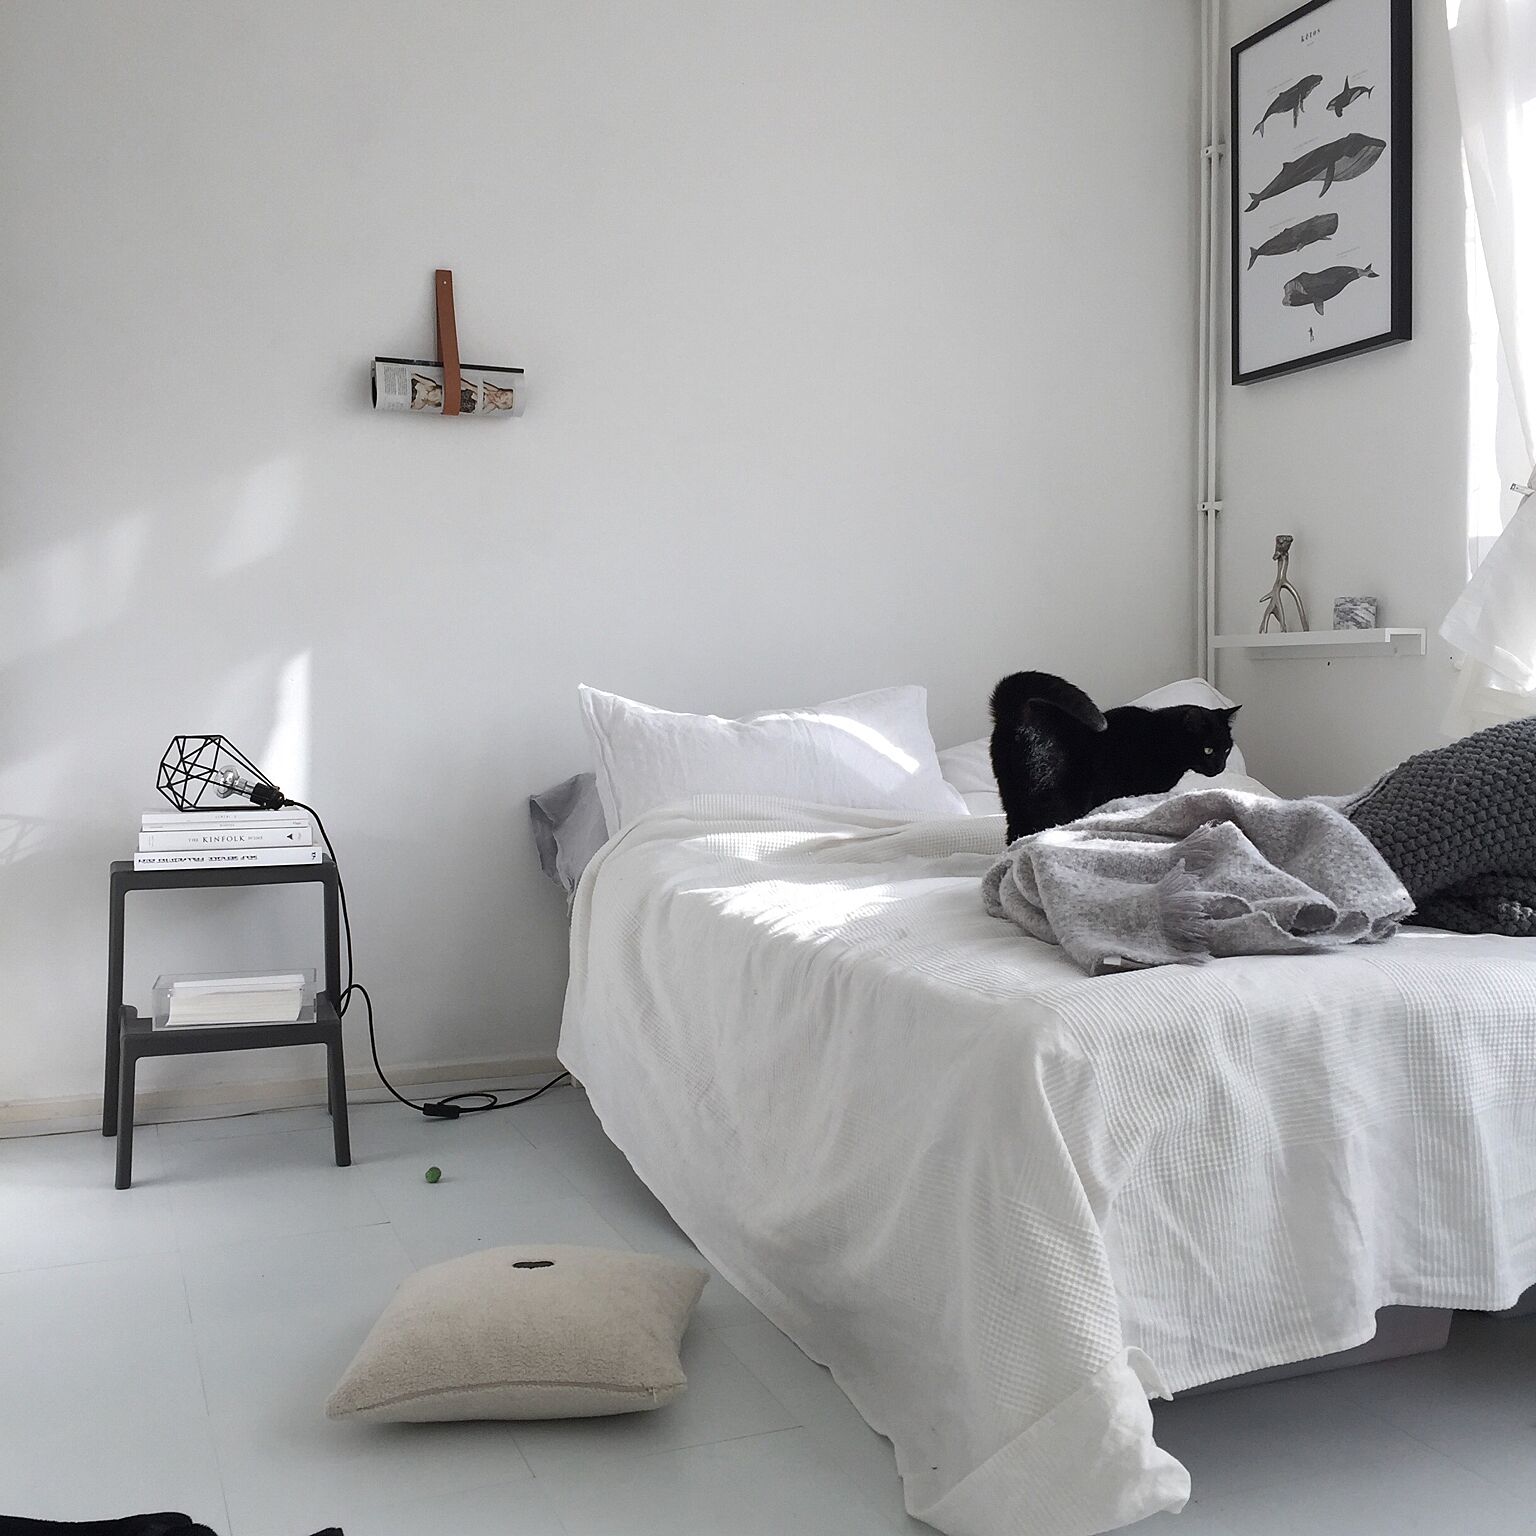 シンプルさが心地よい ミニマルな寝室をコーディネート Roomclip Mag 暮らしとインテリアのwebマガジン